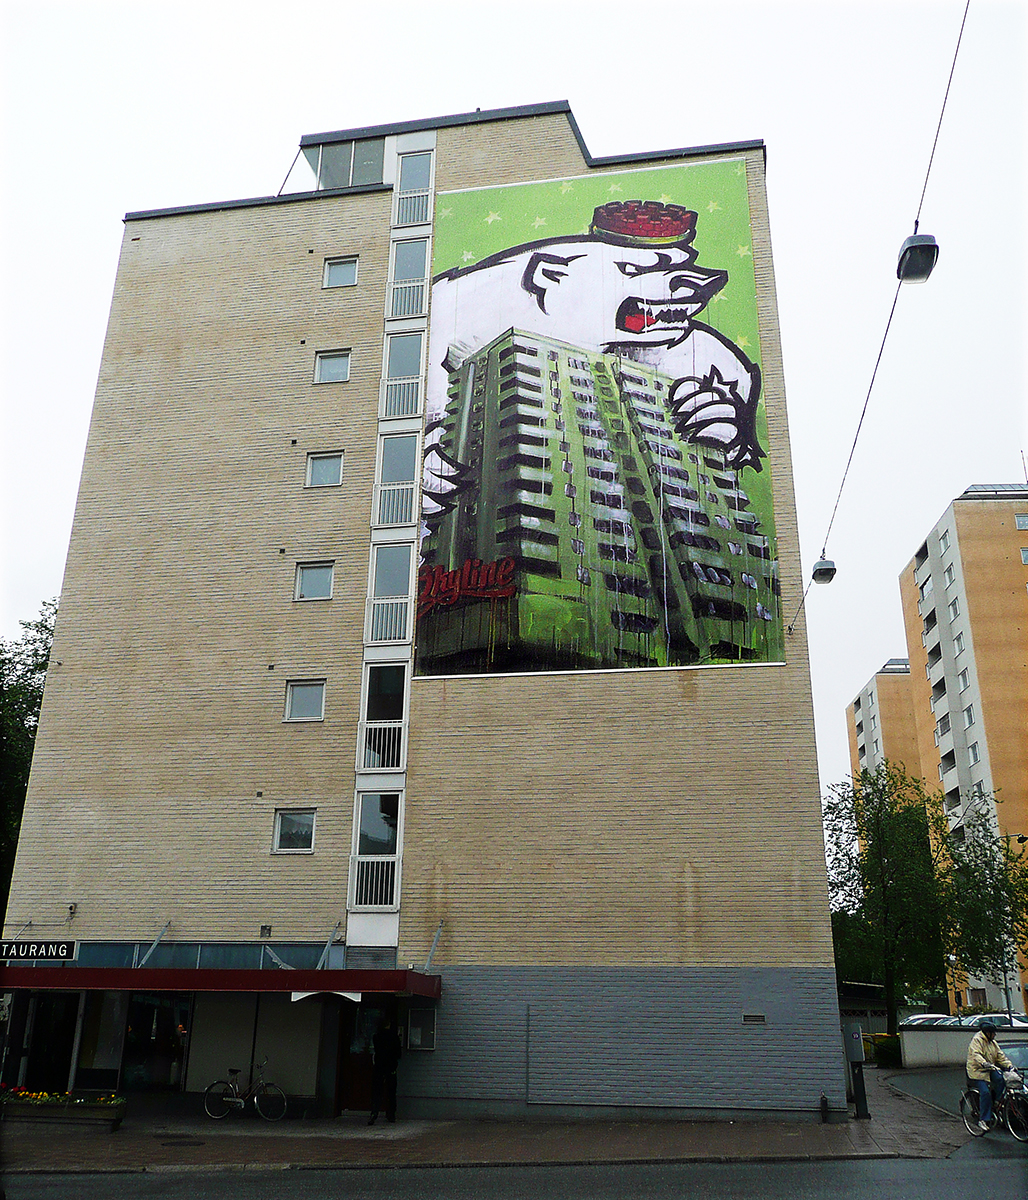 På en husfasad hänger en vepa av en målning som innehåller ett fotografi av ett högt lägenhetshus som en isbjörn attackerar. Isbjörnen har en röd hatt. 